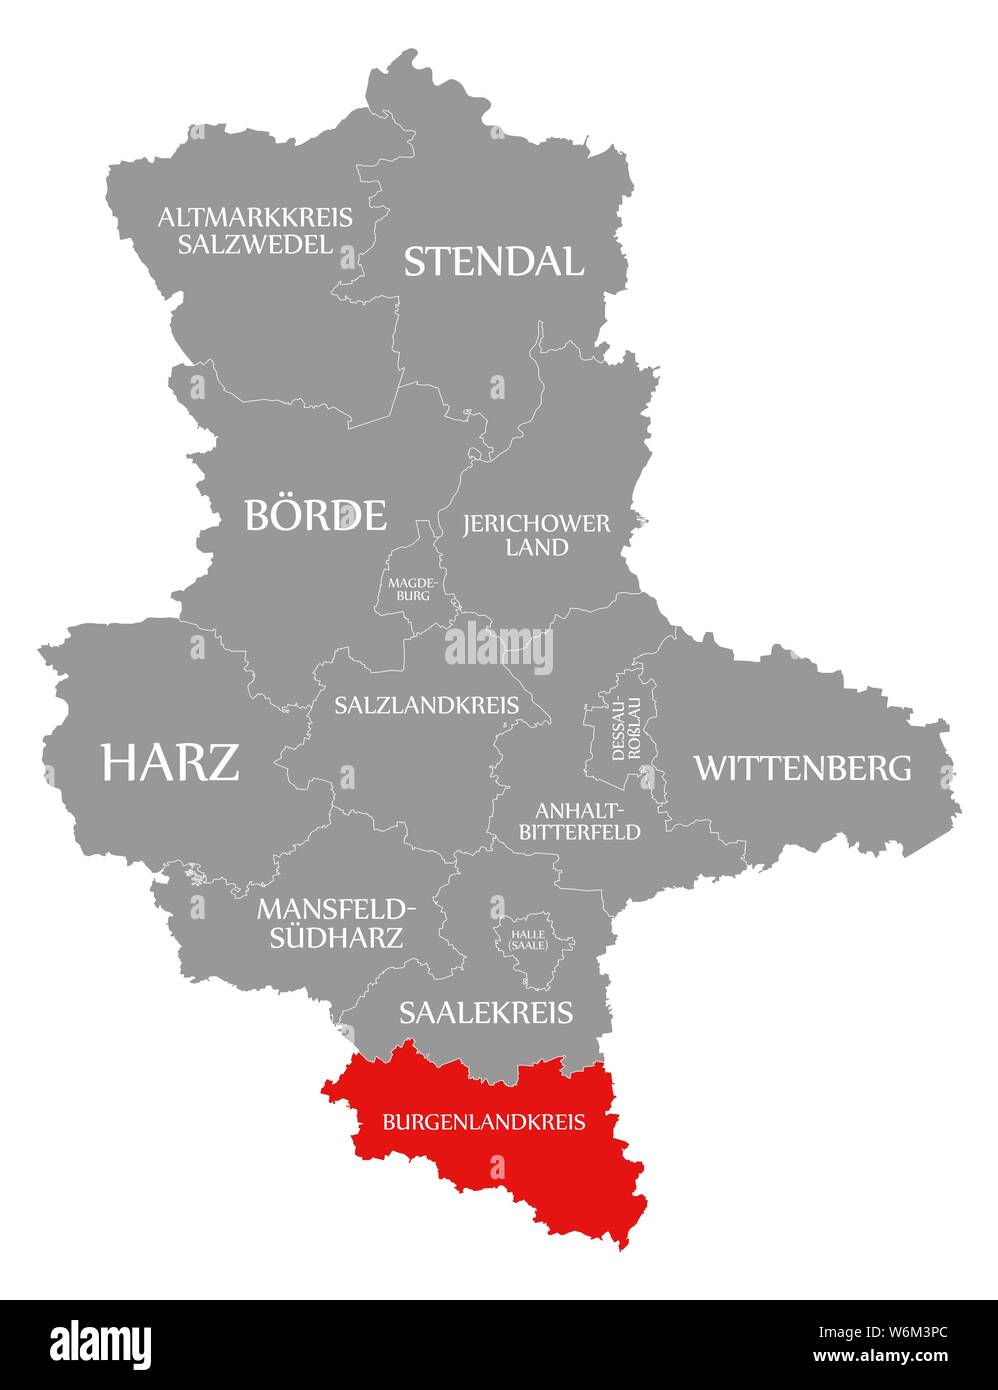 Burgenlandkreis evidenziata in rosso nella mappa di Sassonia Anhalt Germania DE Foto Stock